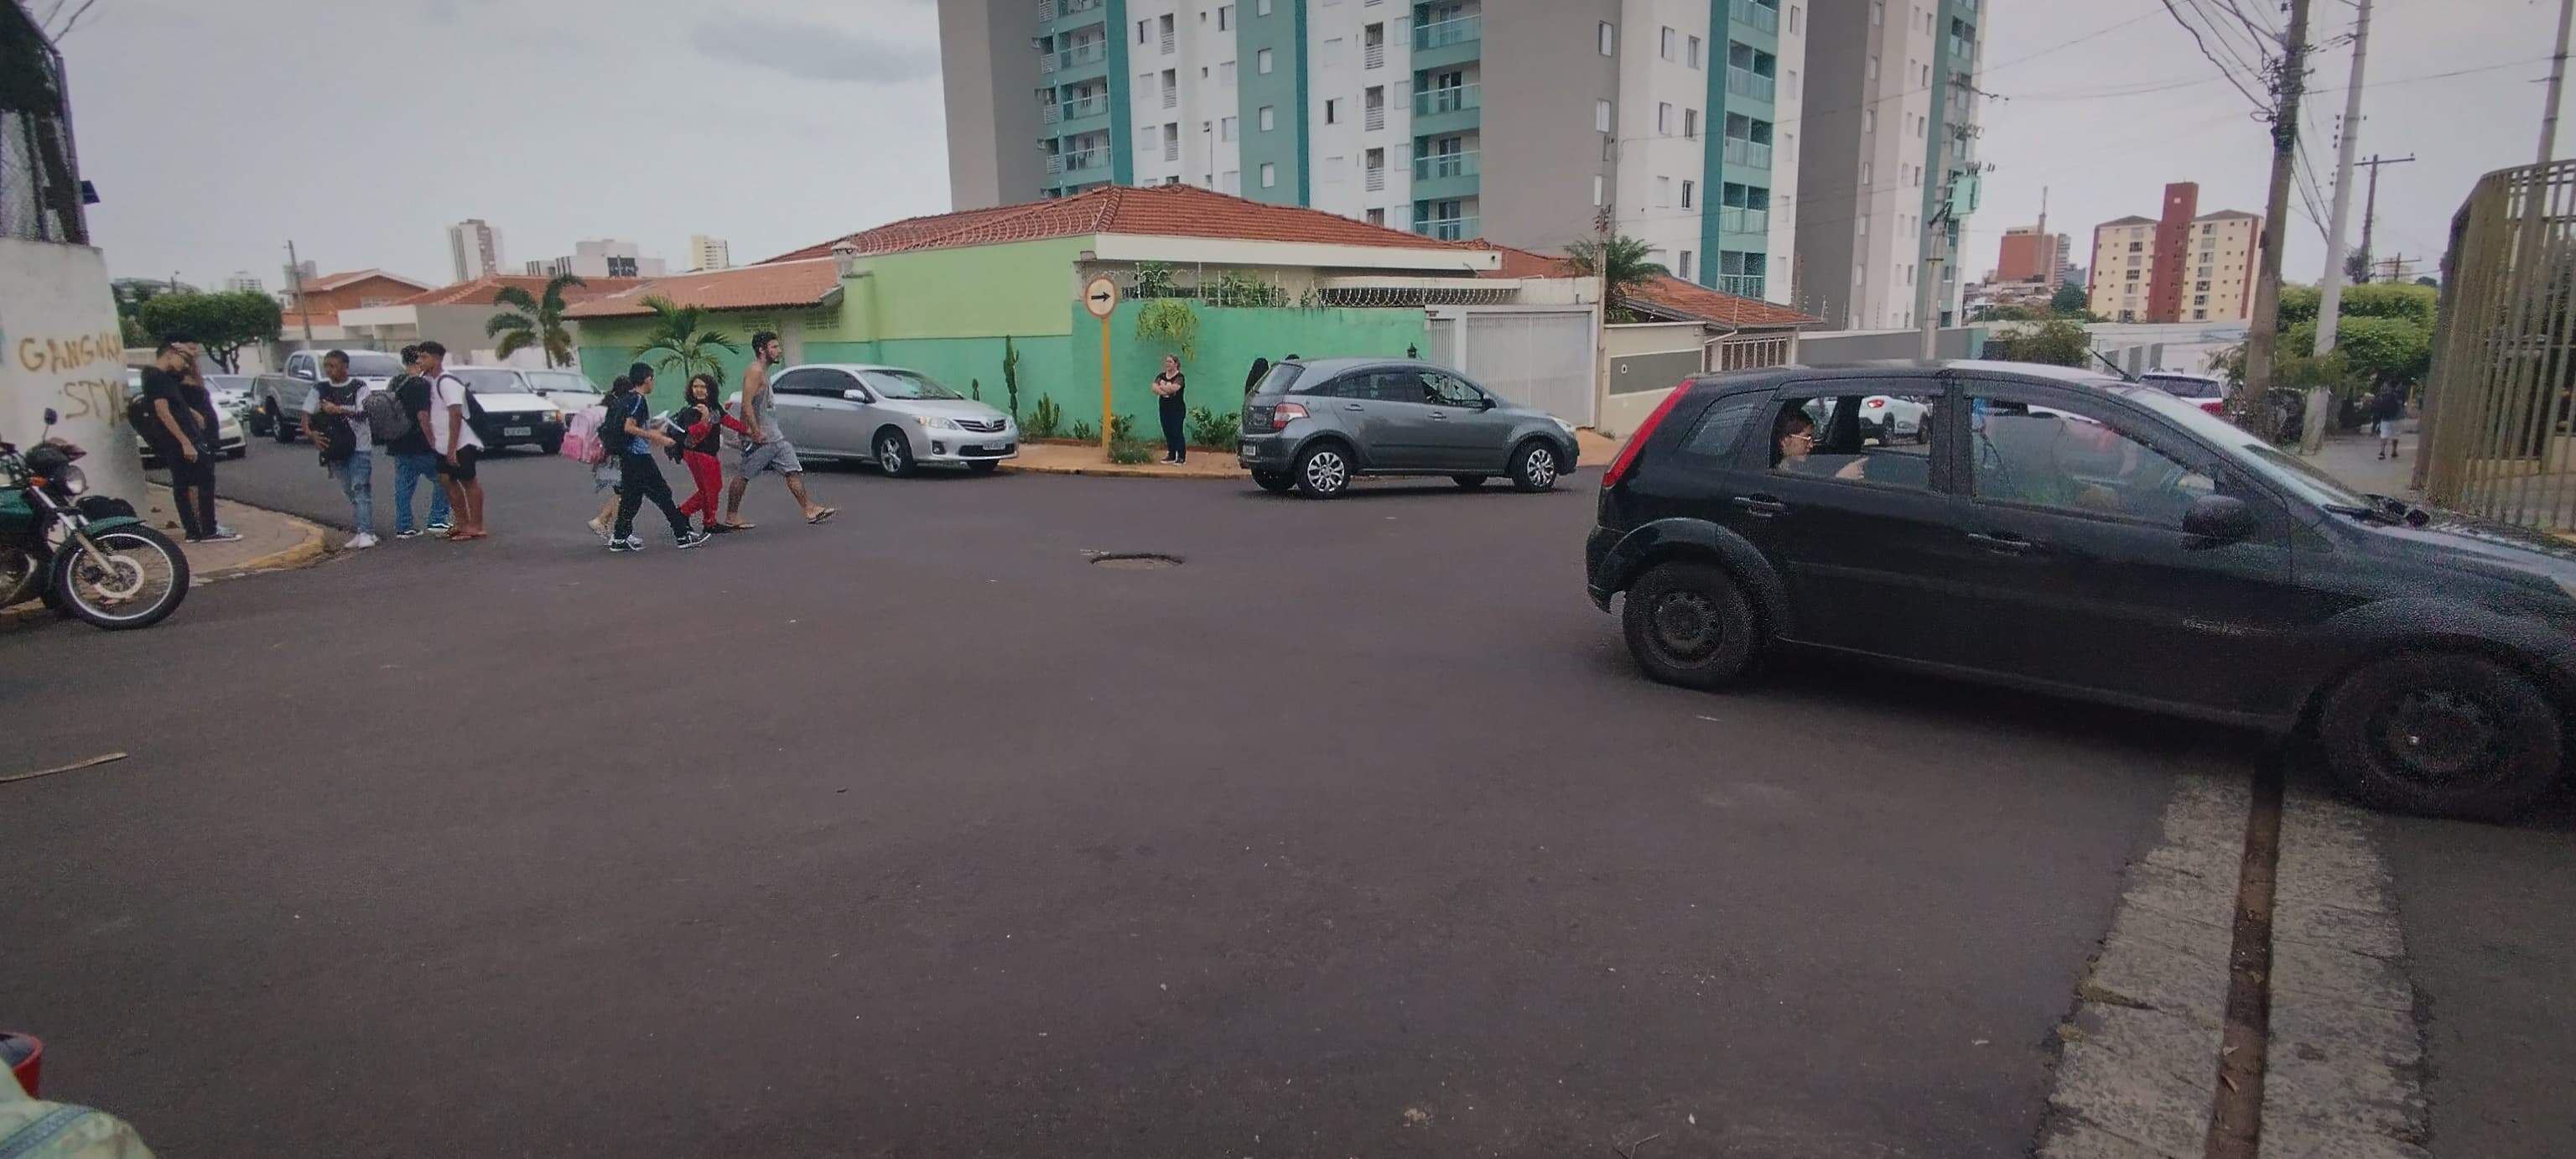 Cruzamento entre a rua Antônio dos Reis e a Capitão João Antônio, não existe qualquer sinalização de solo para pedestres (Foto: Mateus Ferreira/JC)